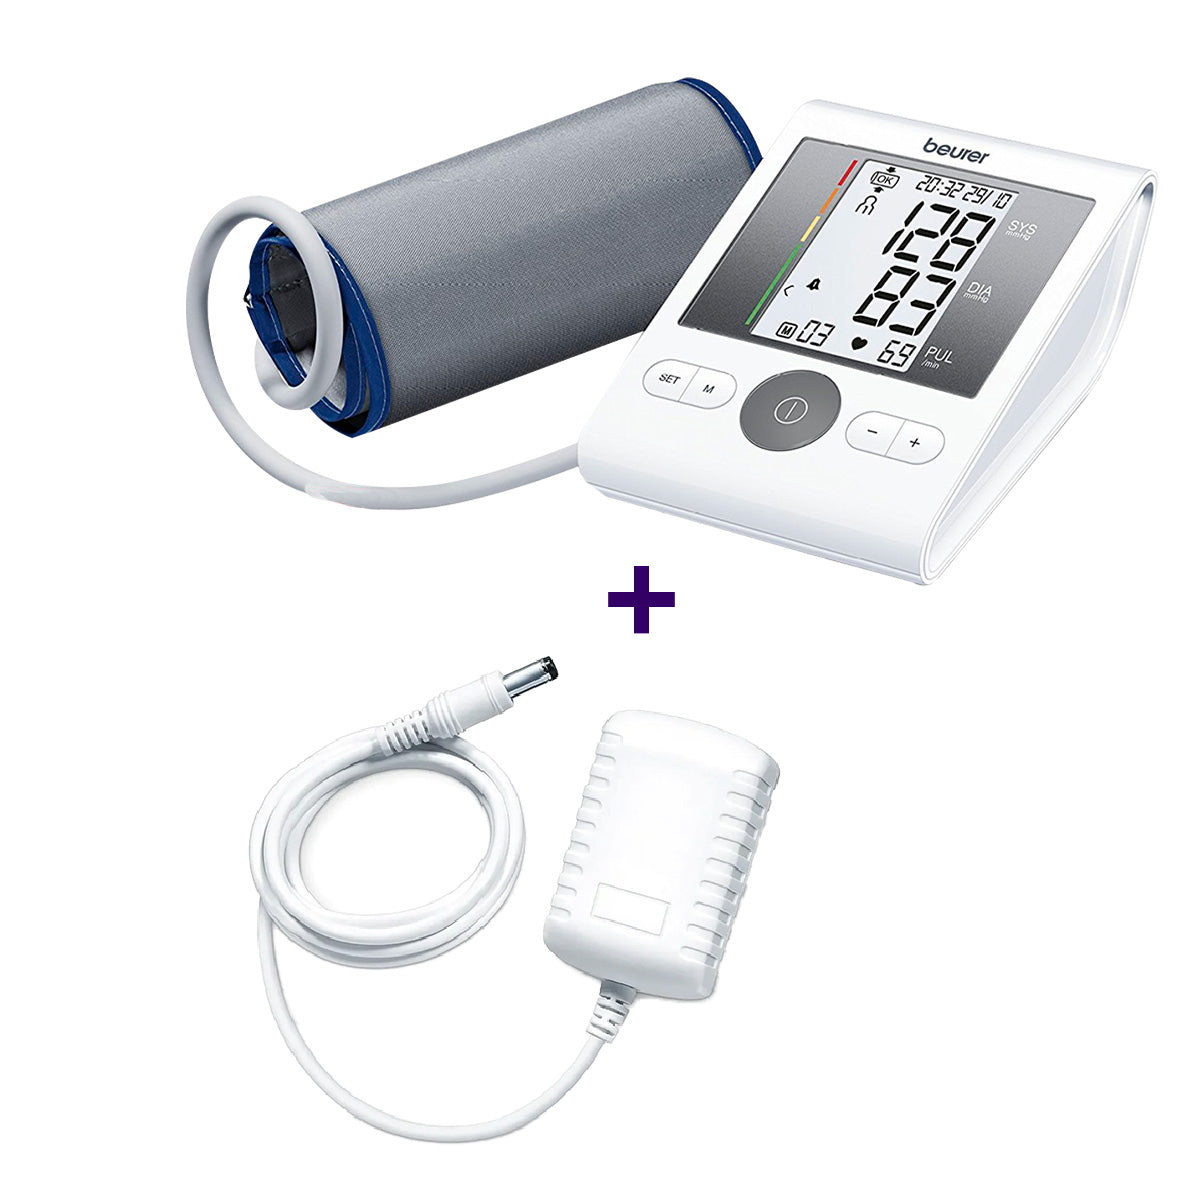 Monitor de presión arterial baumanómetro digital de brazo BM28 + adaptador de corriente Marca Beurer